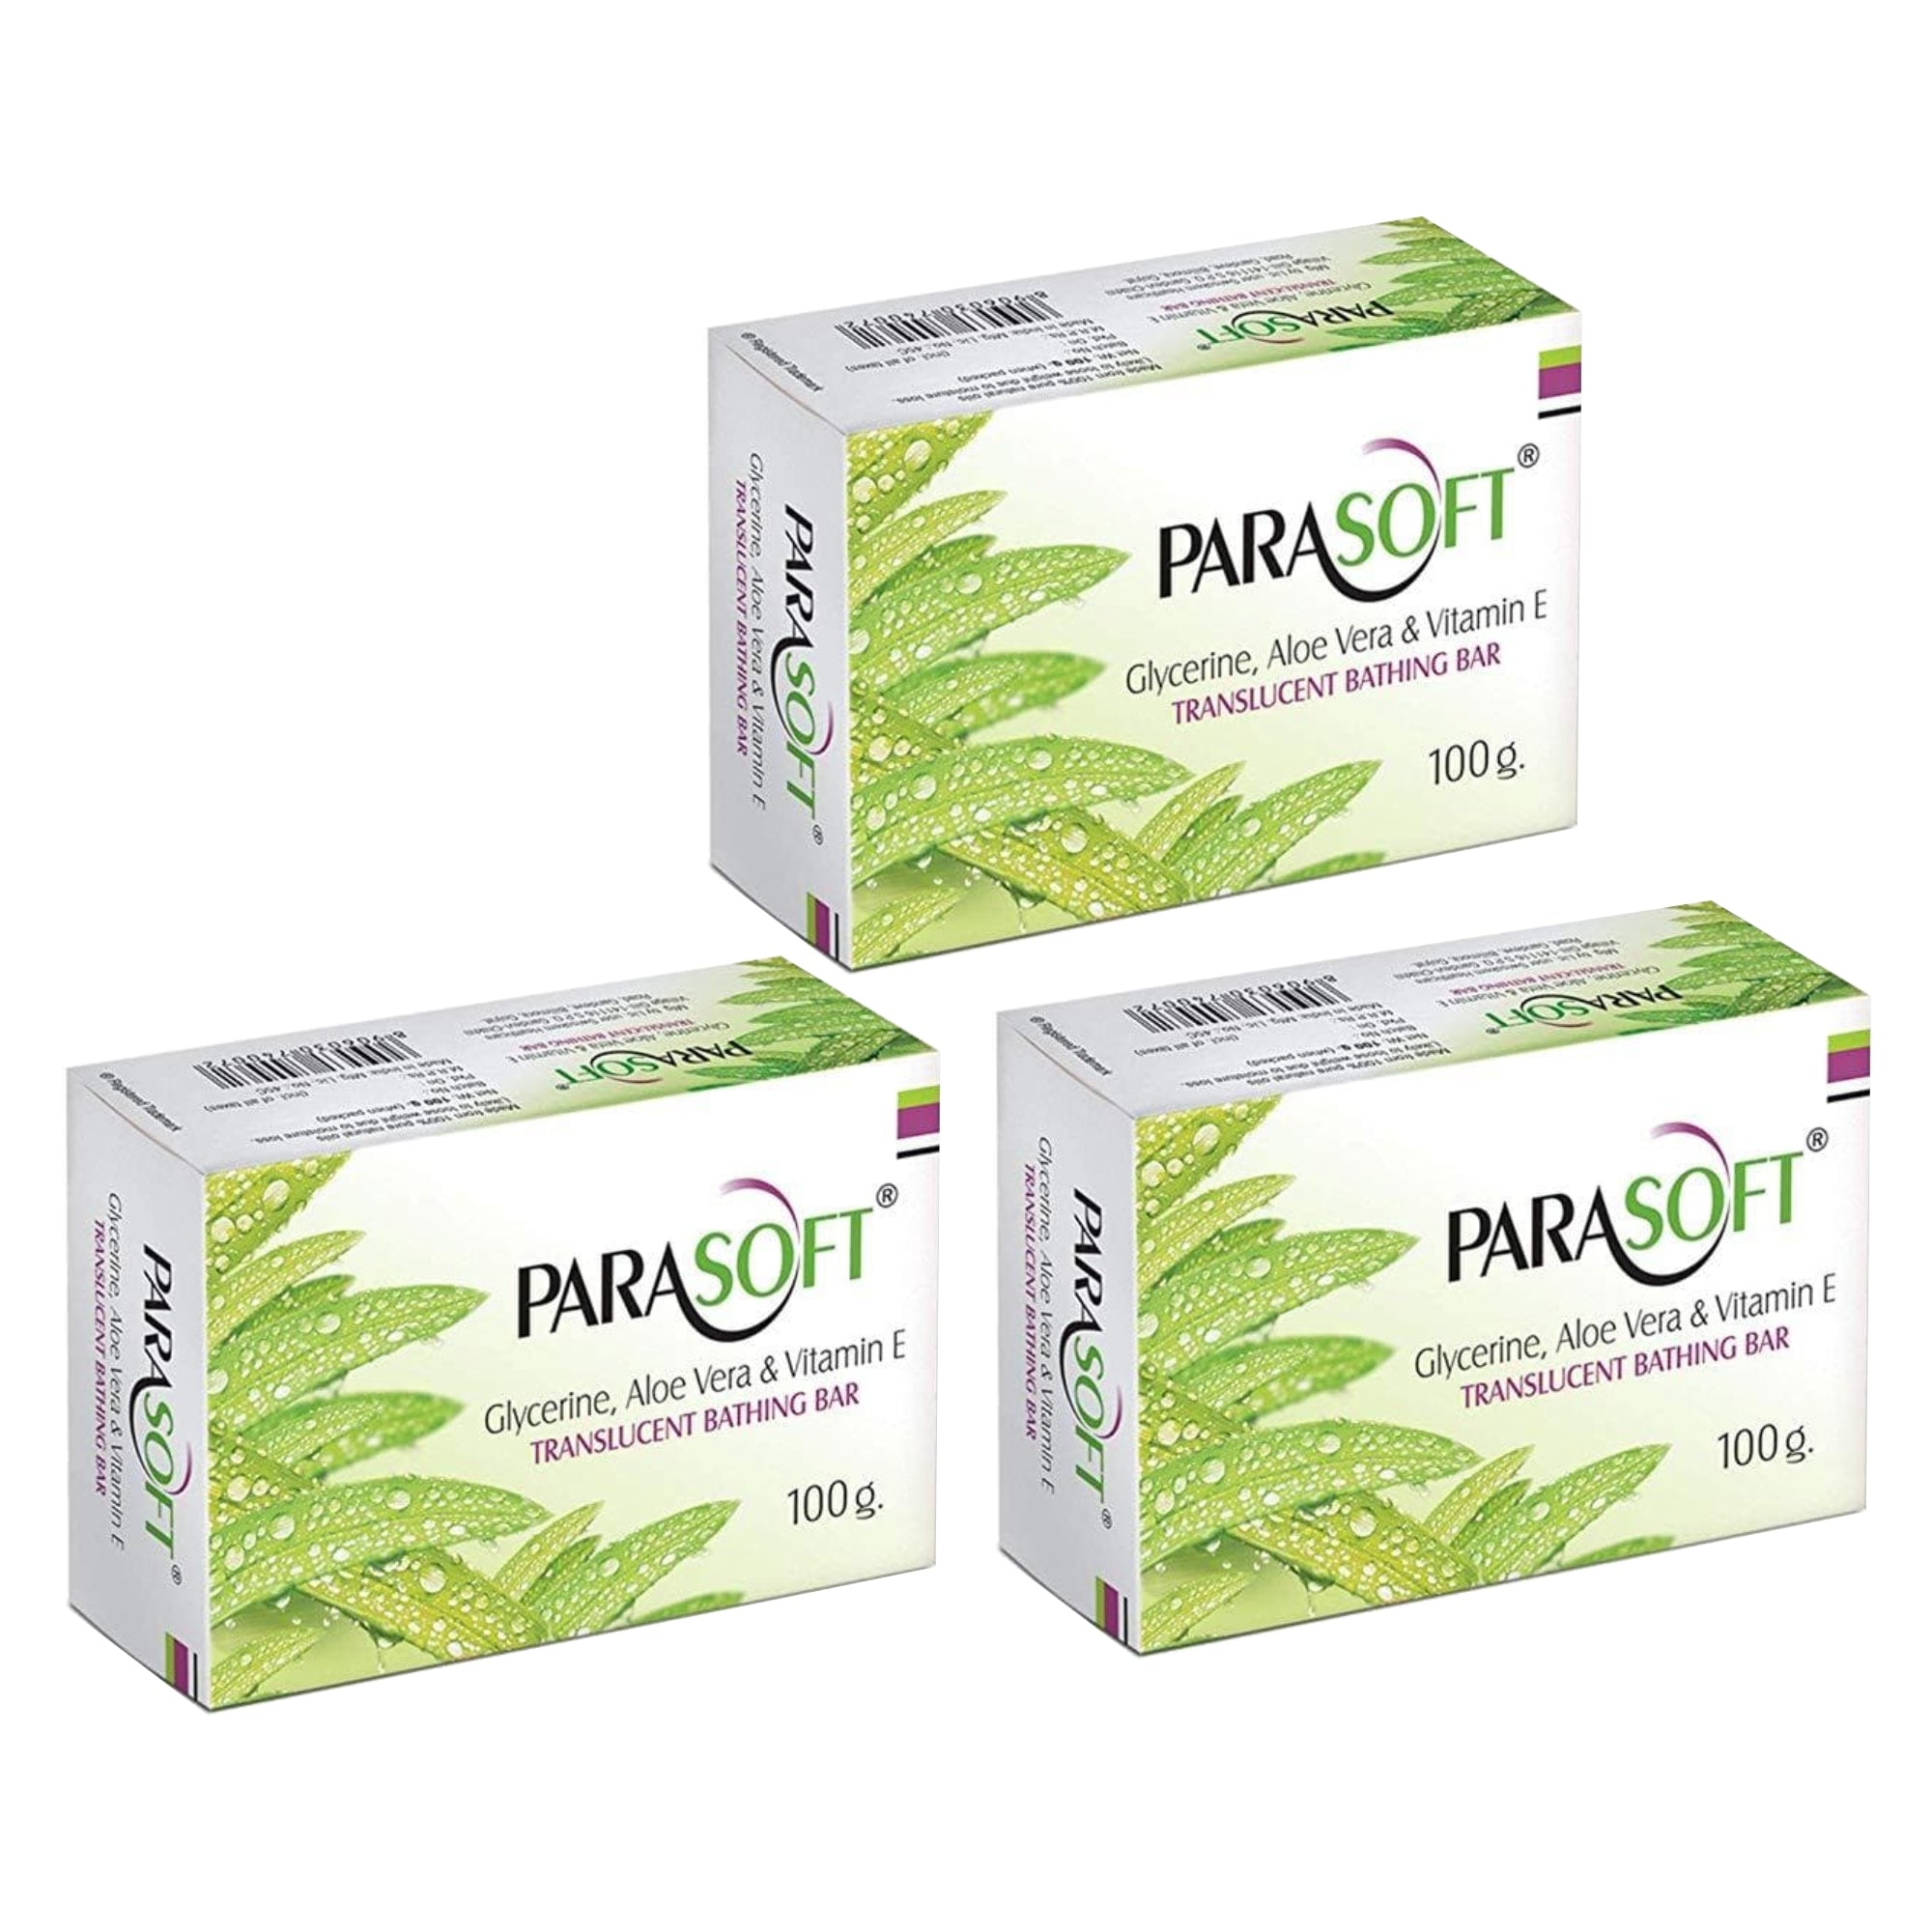 Shoprythm Dry,Parasoft Pack of 3 Salve Parasoft Soap 100g